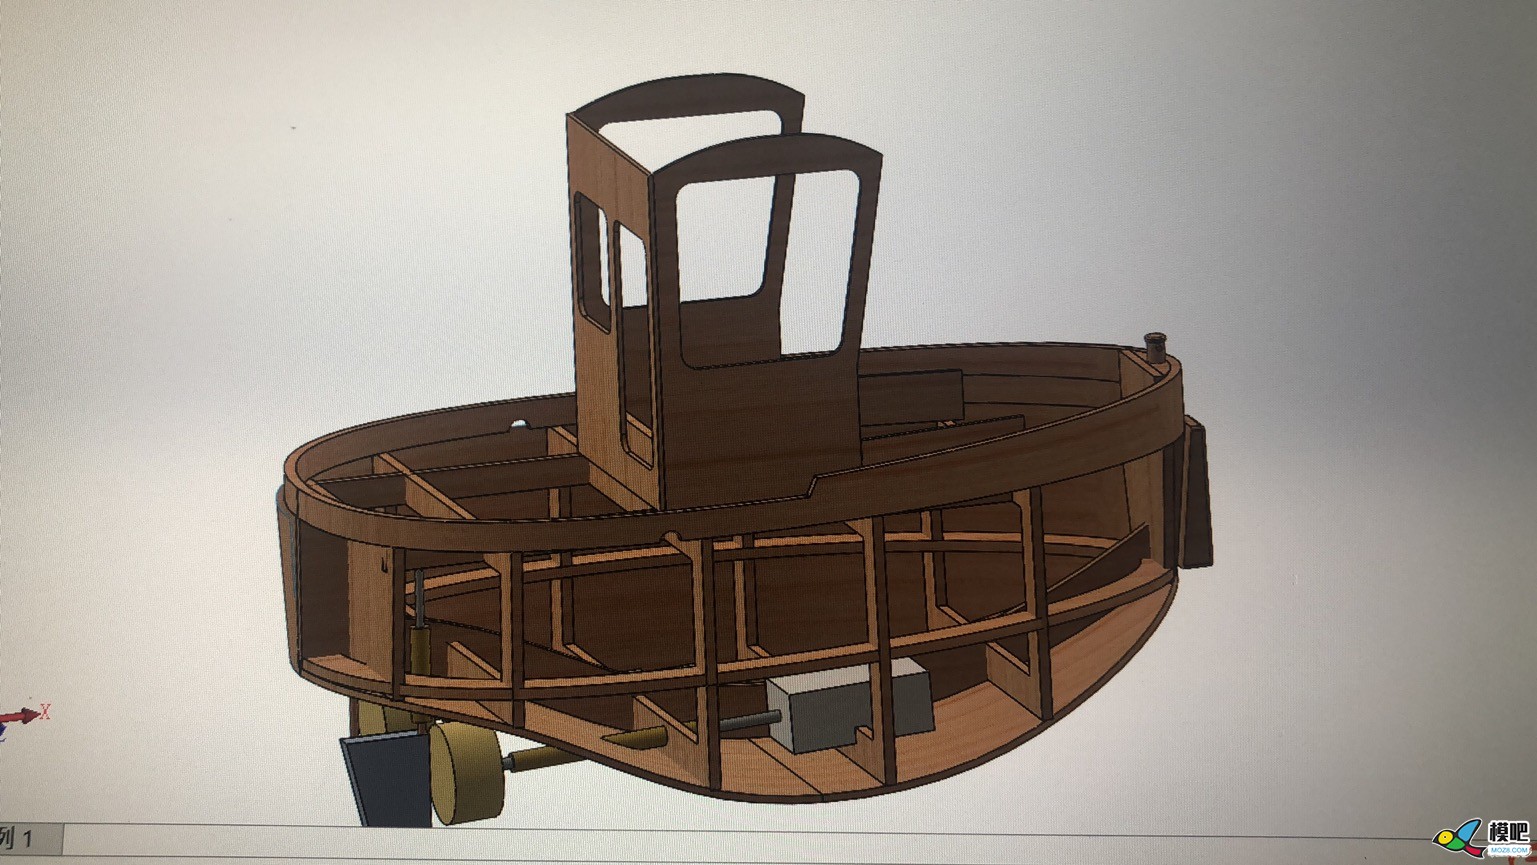 波曼小海狸小萌拖木质套材建模设计制作之让女票给钱造船 船模型,rc船模制作教程,船模制作 船身,船模套材,遥控器 作者:慢克来了 4618 